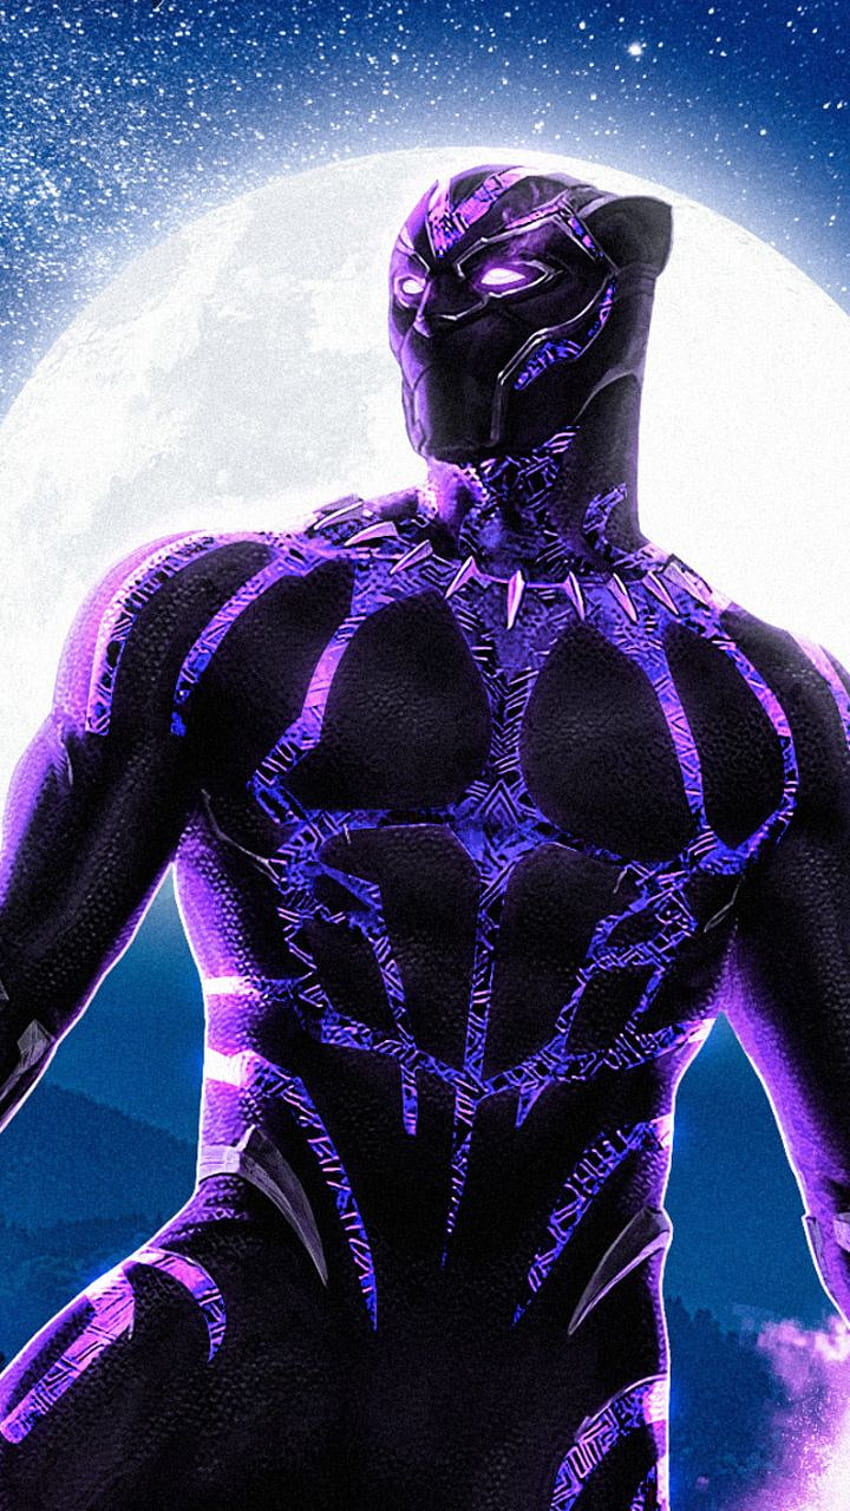 Marvel Legends VIBRANIUM T'CHALLA Purple Black Panther M'Baku BAF Action  Figure Review - YouTube